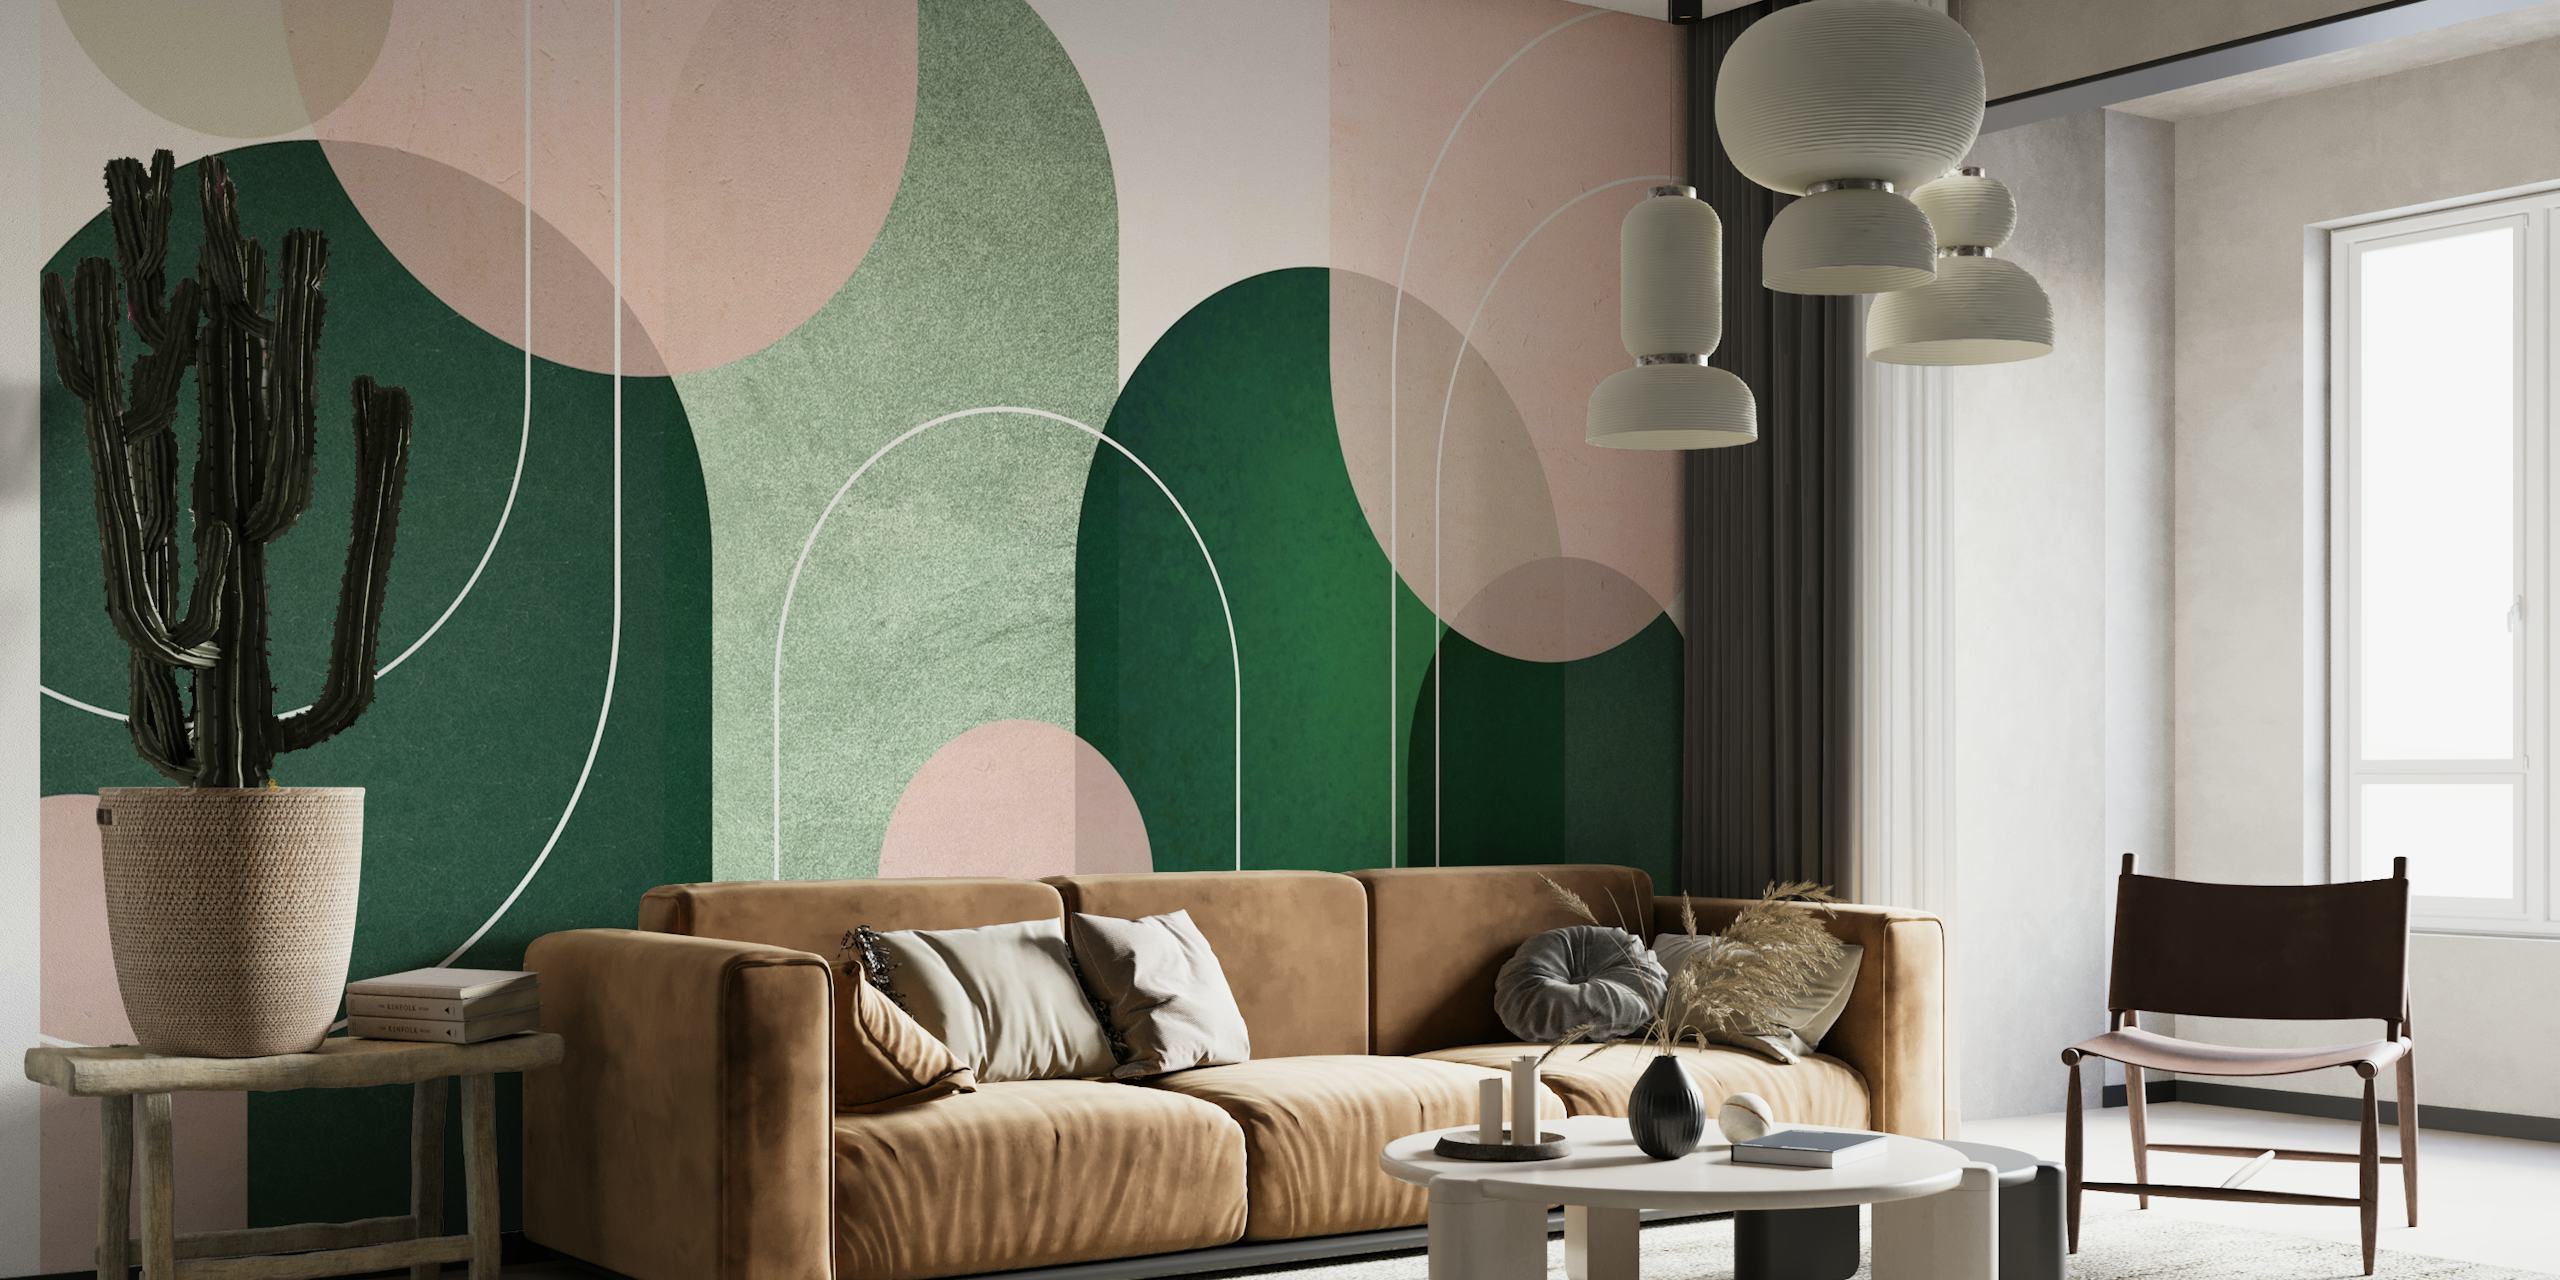 Fototapete „Abstract Archways Pink Green“ mit beruhigenden rosa und grünen Bögen in minimalistischem Design